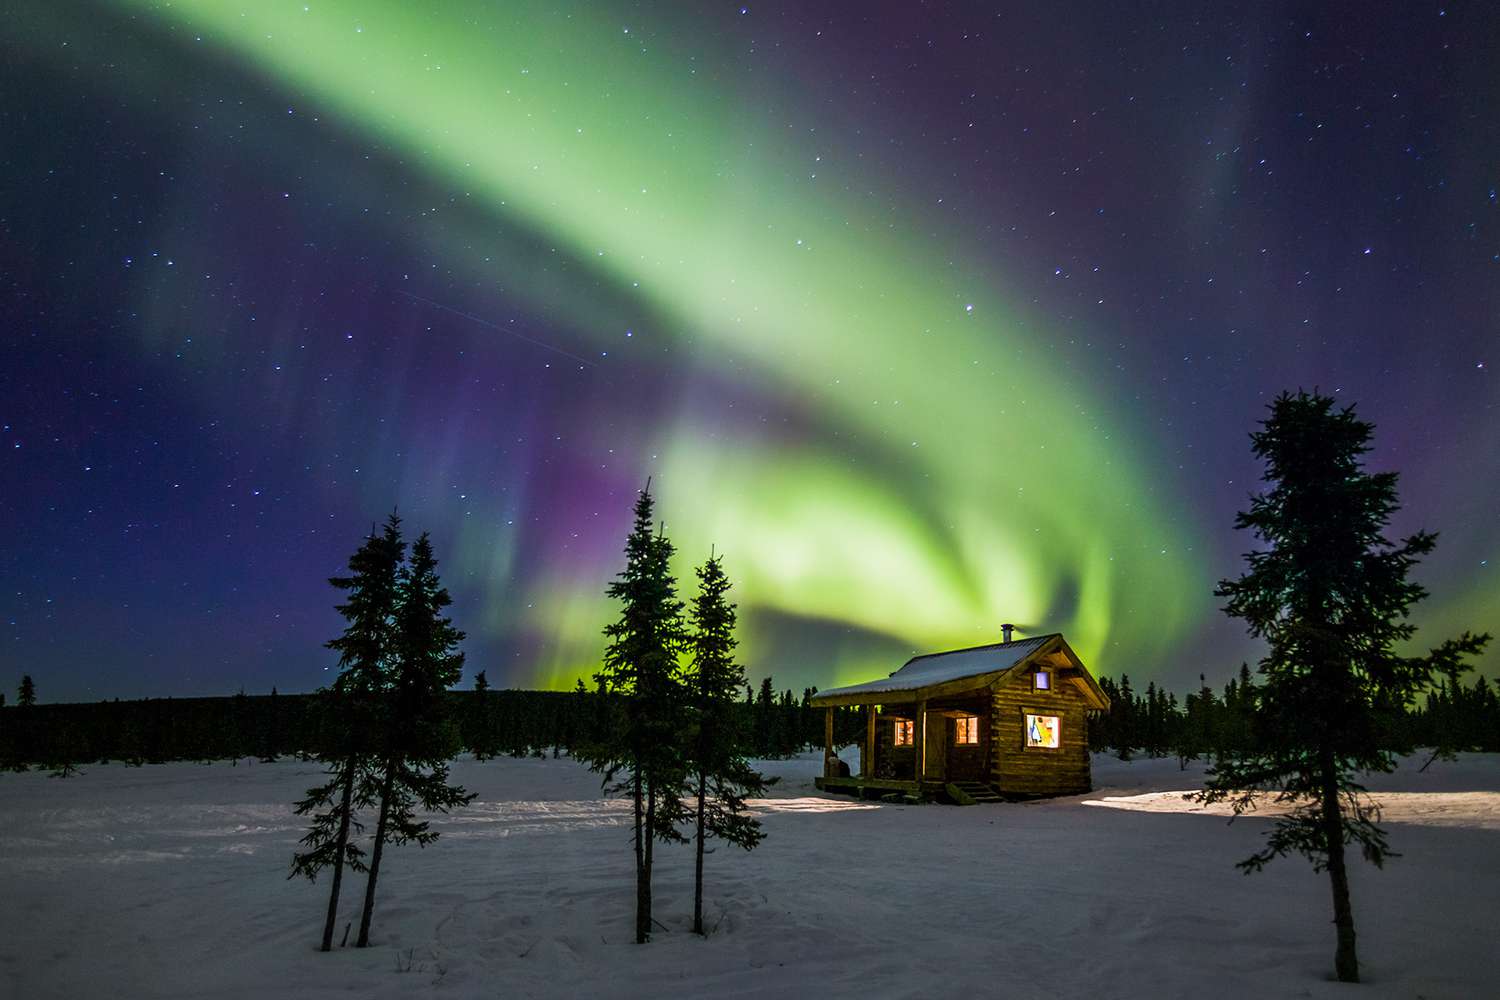 Địa điểm ngắm cực quang đẹp nhất: Fairbanks, Alaska, Mỹ (Ảnh: Internet)